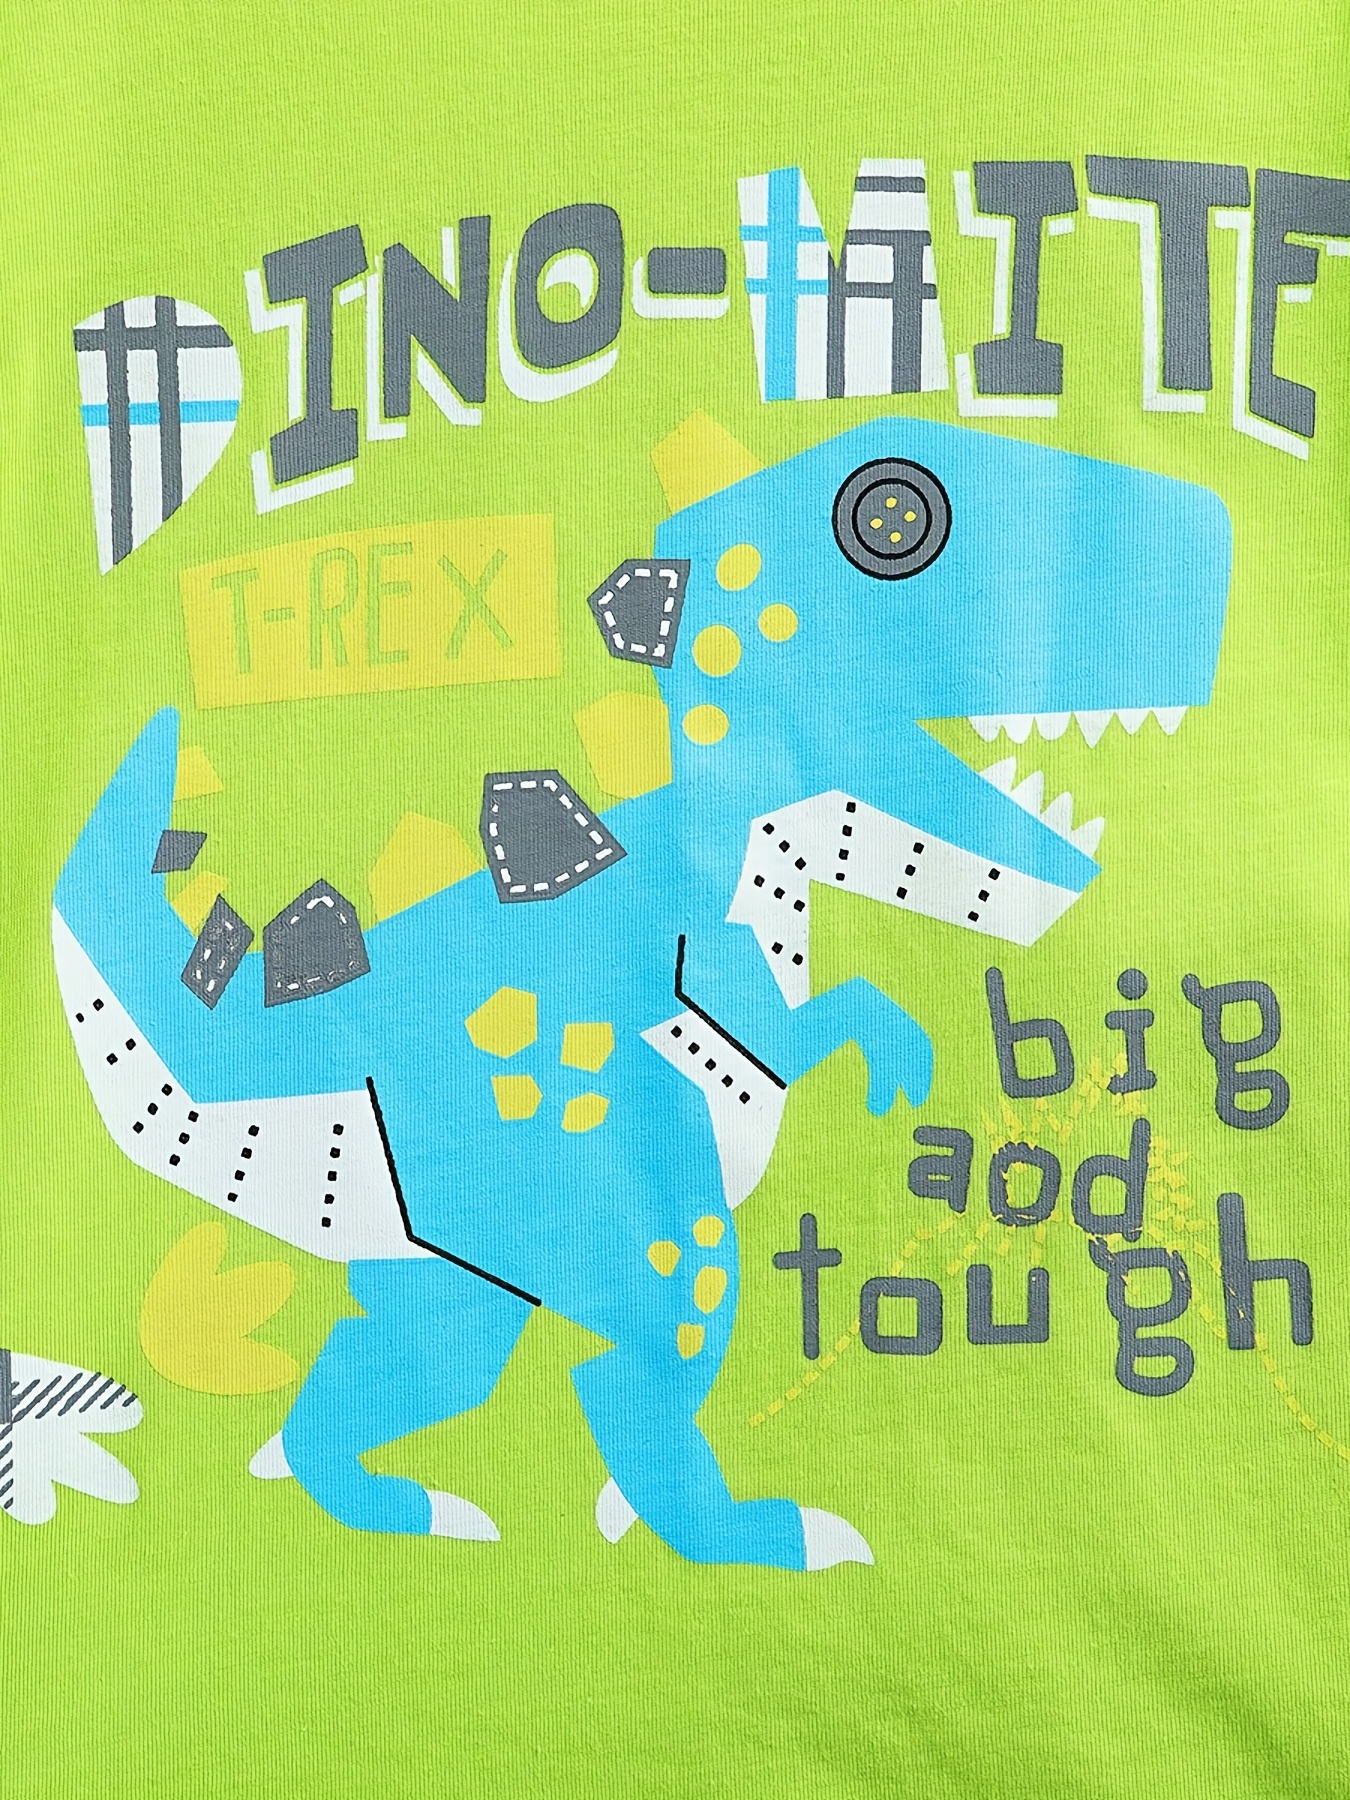 Ahsnme dinossauro dos desenhos animados jogo de cama t-rex padrão colcha  capa favorito do menino têxteis para casa multi-país tamanho para  au/eua/ue/ru - AliExpress